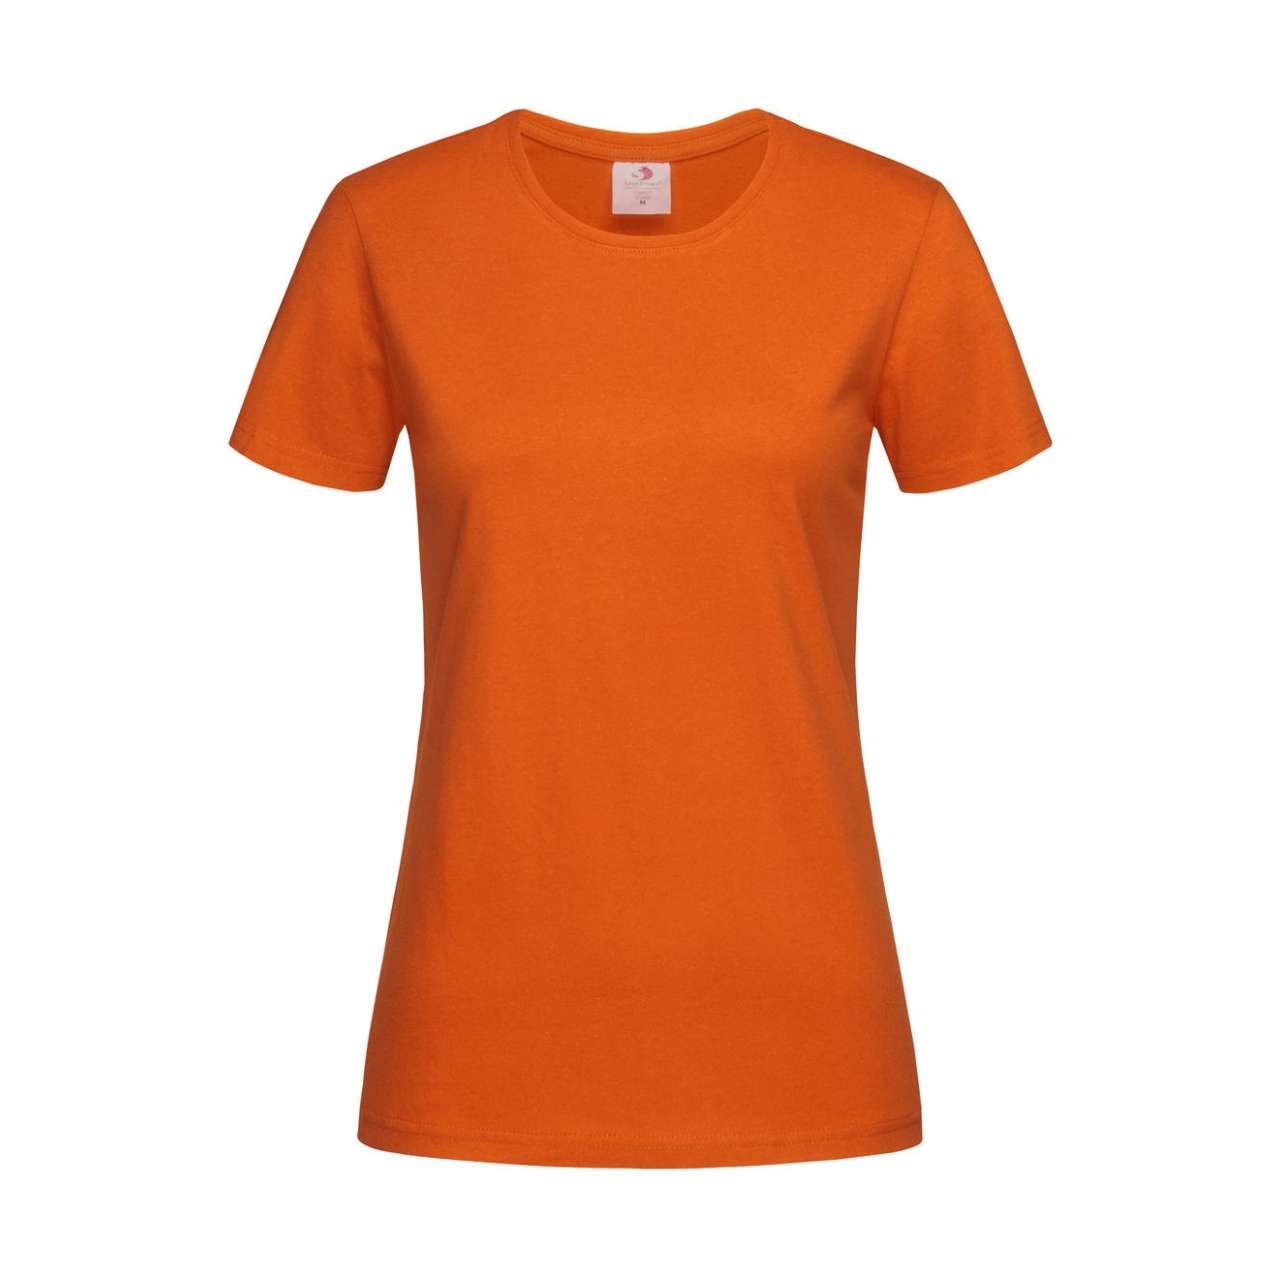 Tričko dámské Stedman Fitted s kulatým výstřihem - oranžové, XL